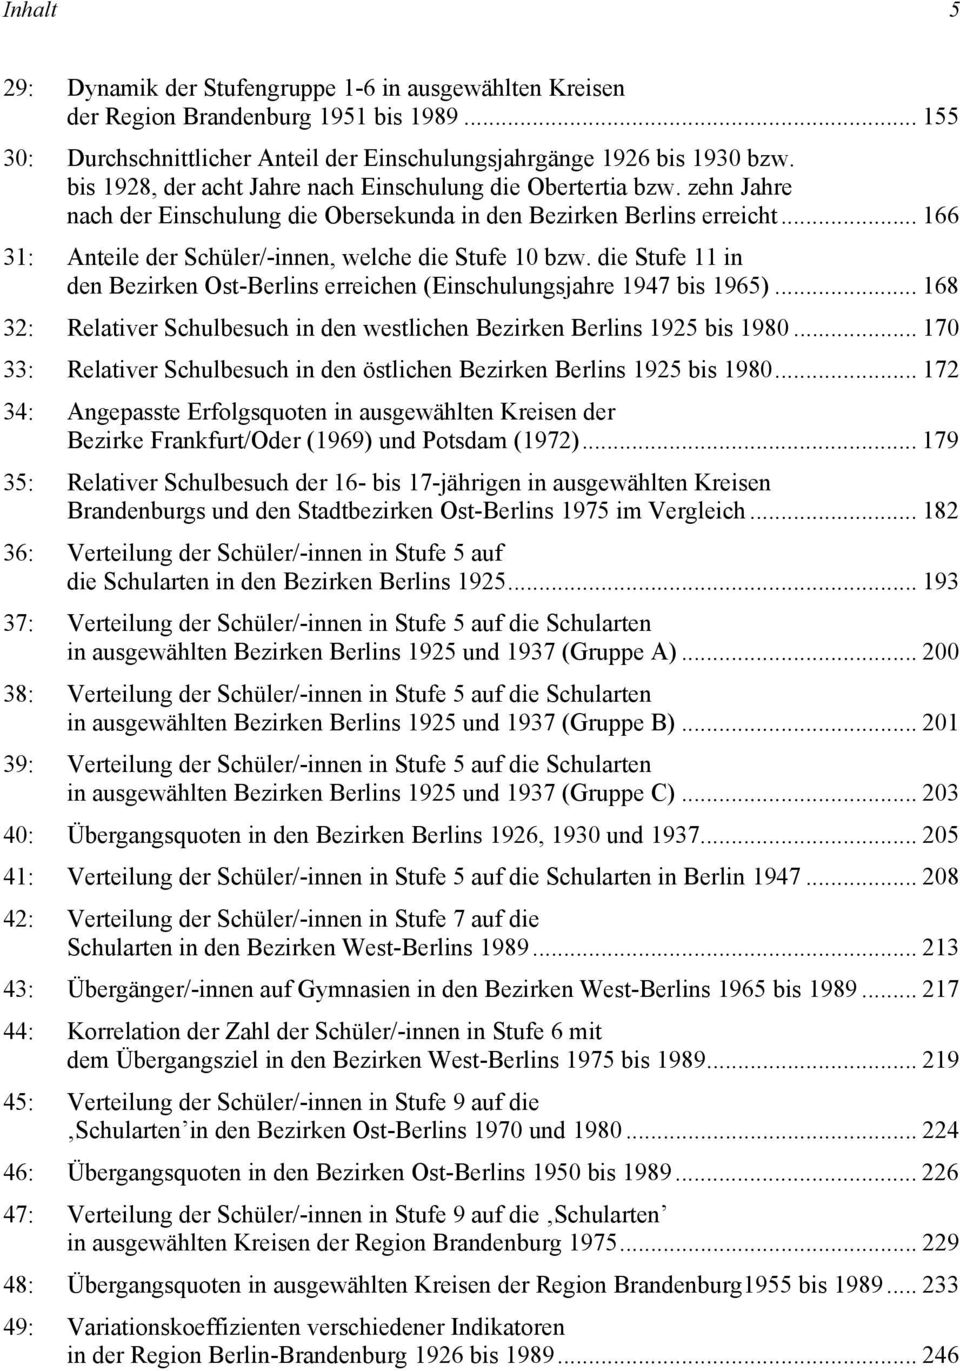 .. 166 31: Anteile der Schüler/-innen, welche die Stufe 10 bzw. die Stufe 11 in den Bezirken Ost-Berlins erreichen (Einschulungsjahre 1947 bis 1965).